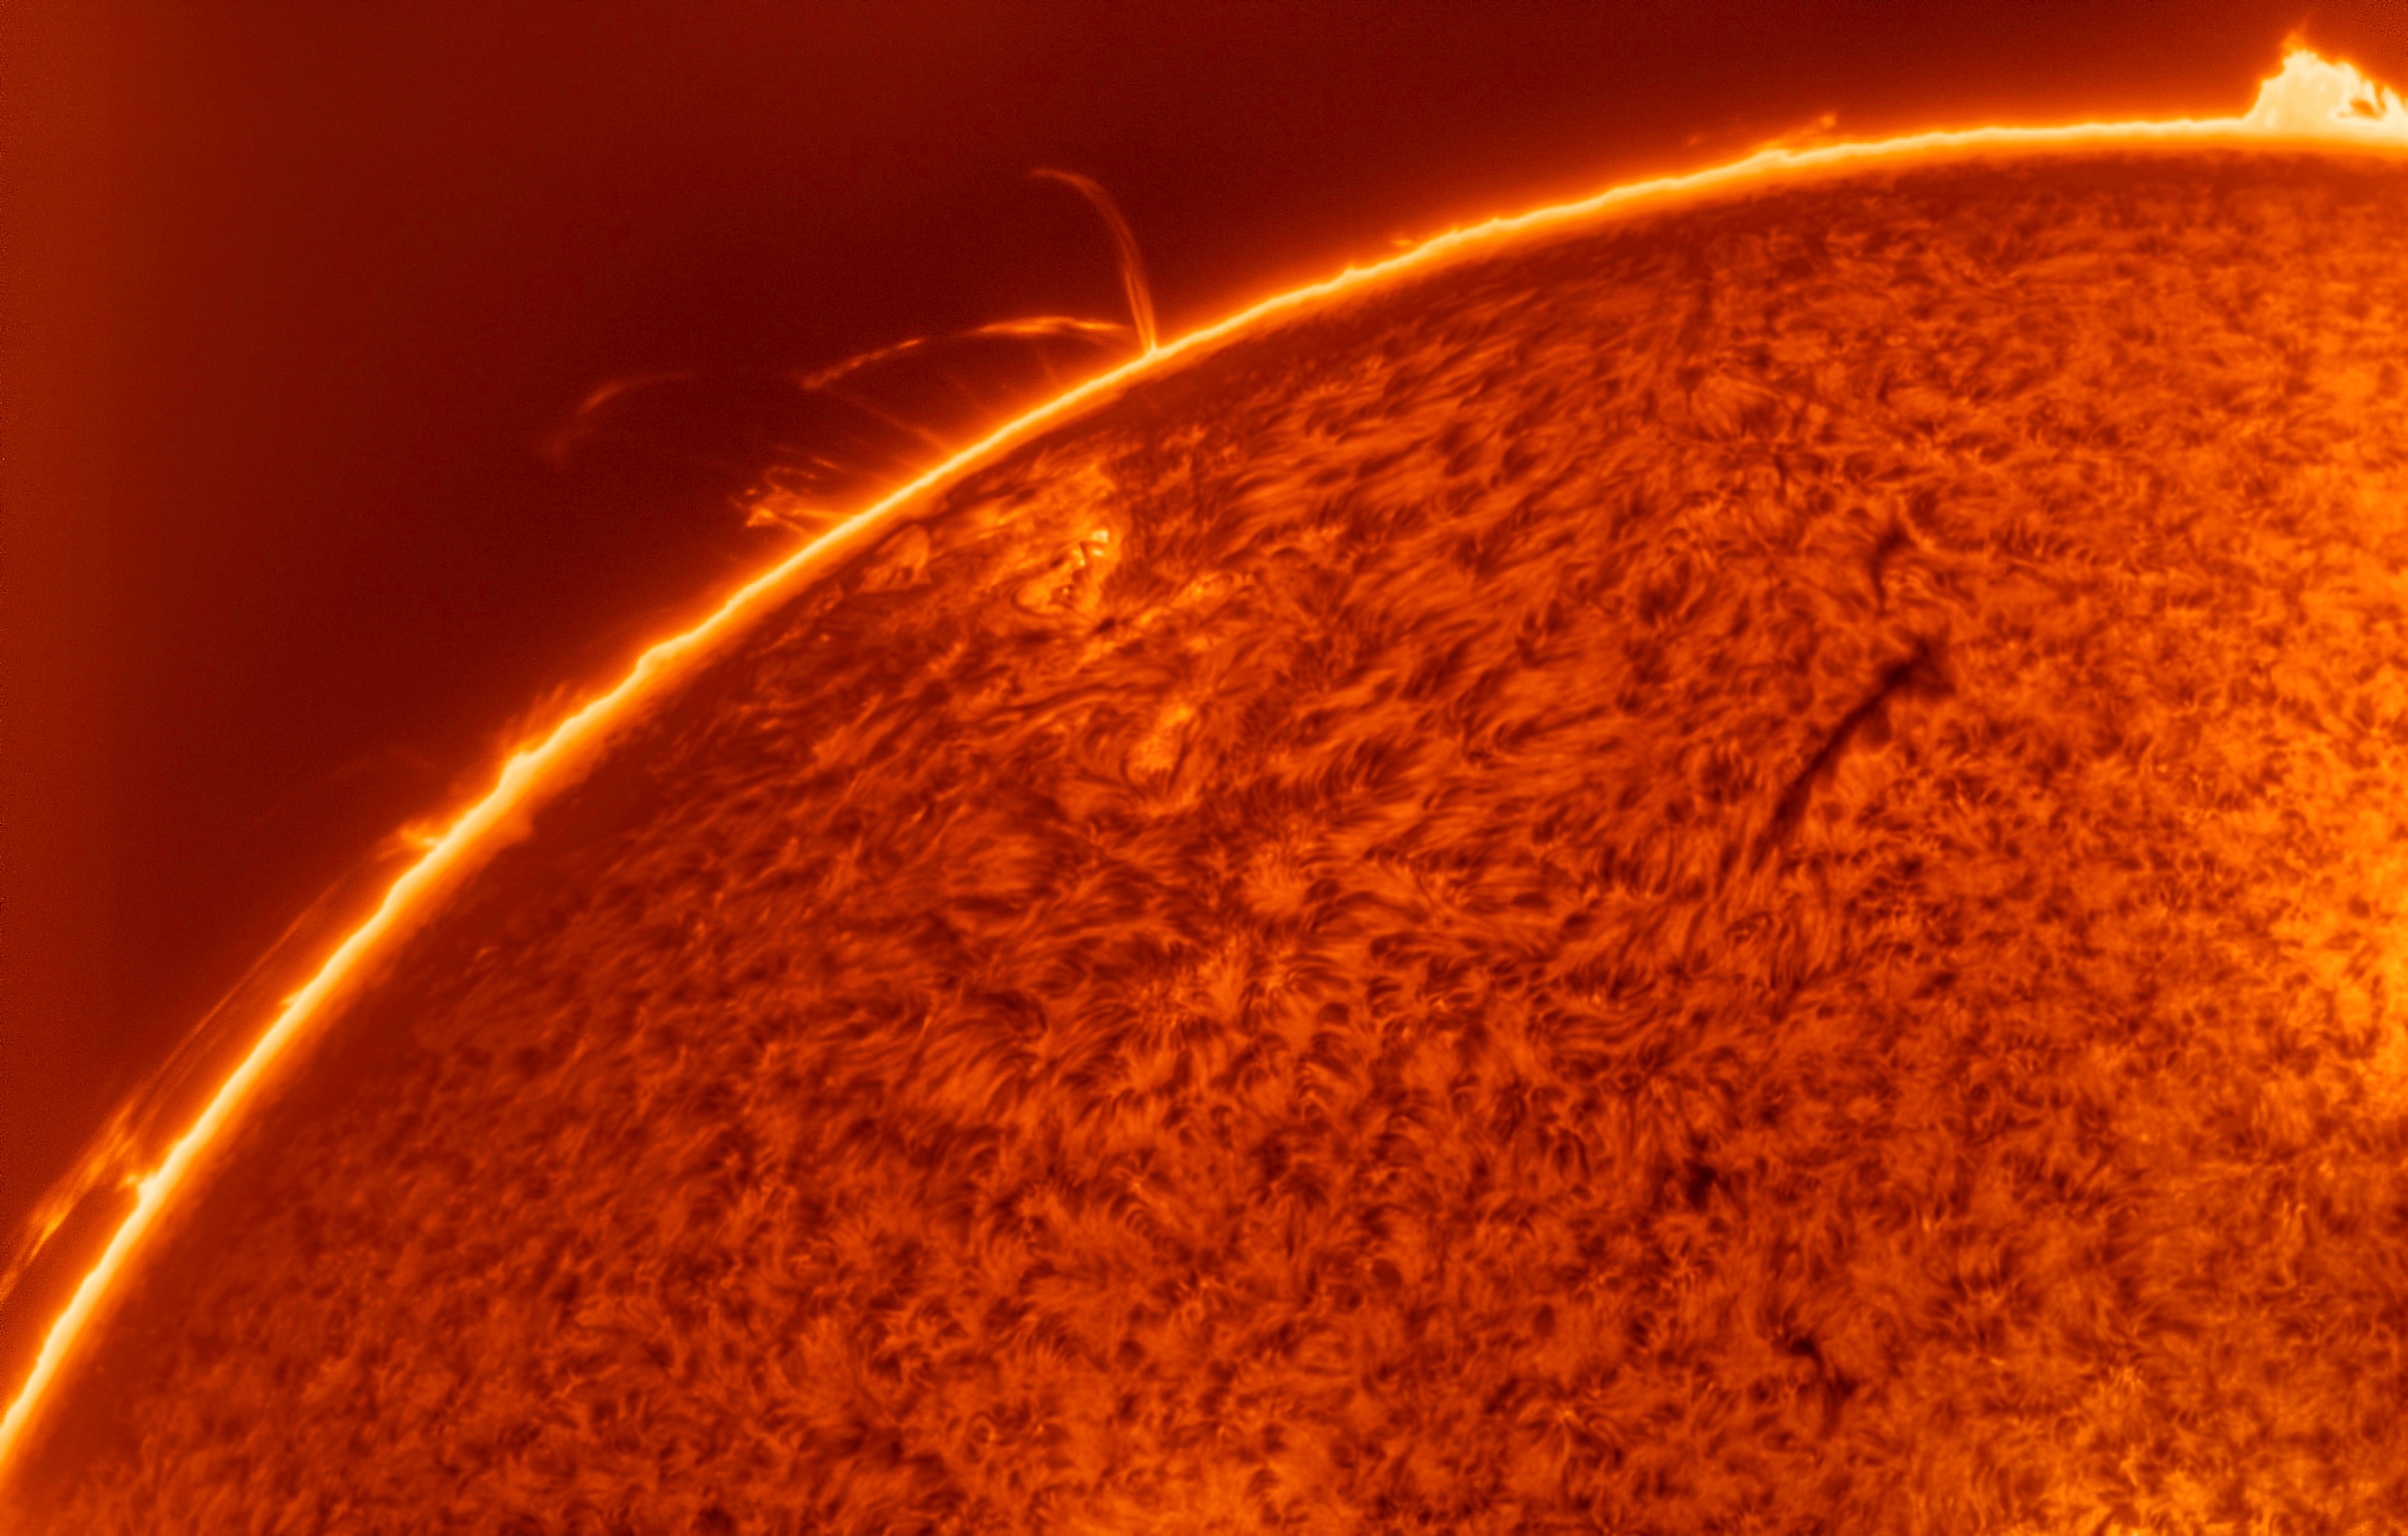 Противоположная сторона солнца. Обратная сторона солнца. Корональная дыра на солнце 2023. Фото обратной стороны солнца. Солнце фото из космоса в высоком качестве 2020.